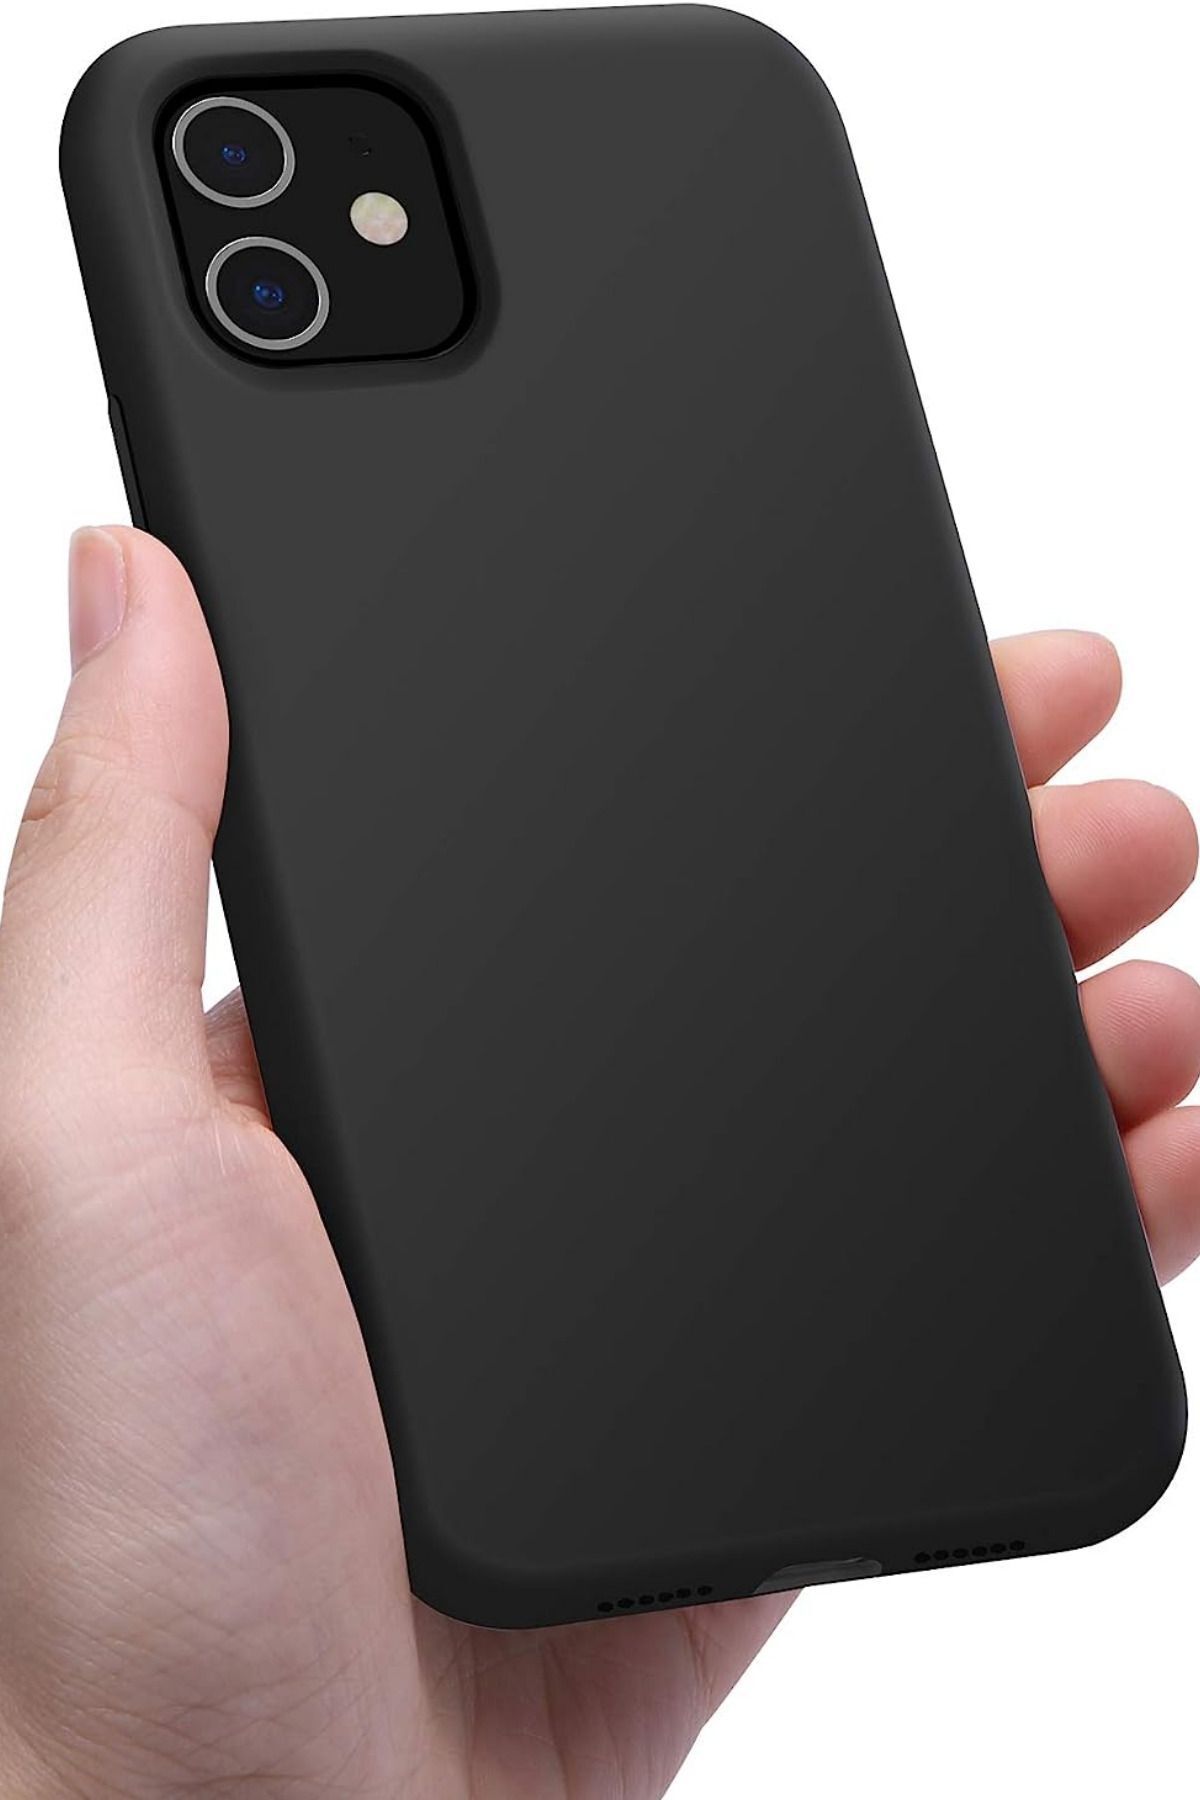 KVK PRİVACY Apple Iphone 11 Uyumlu Altı Kapalı Lansman Kılıf Kapak Siyah